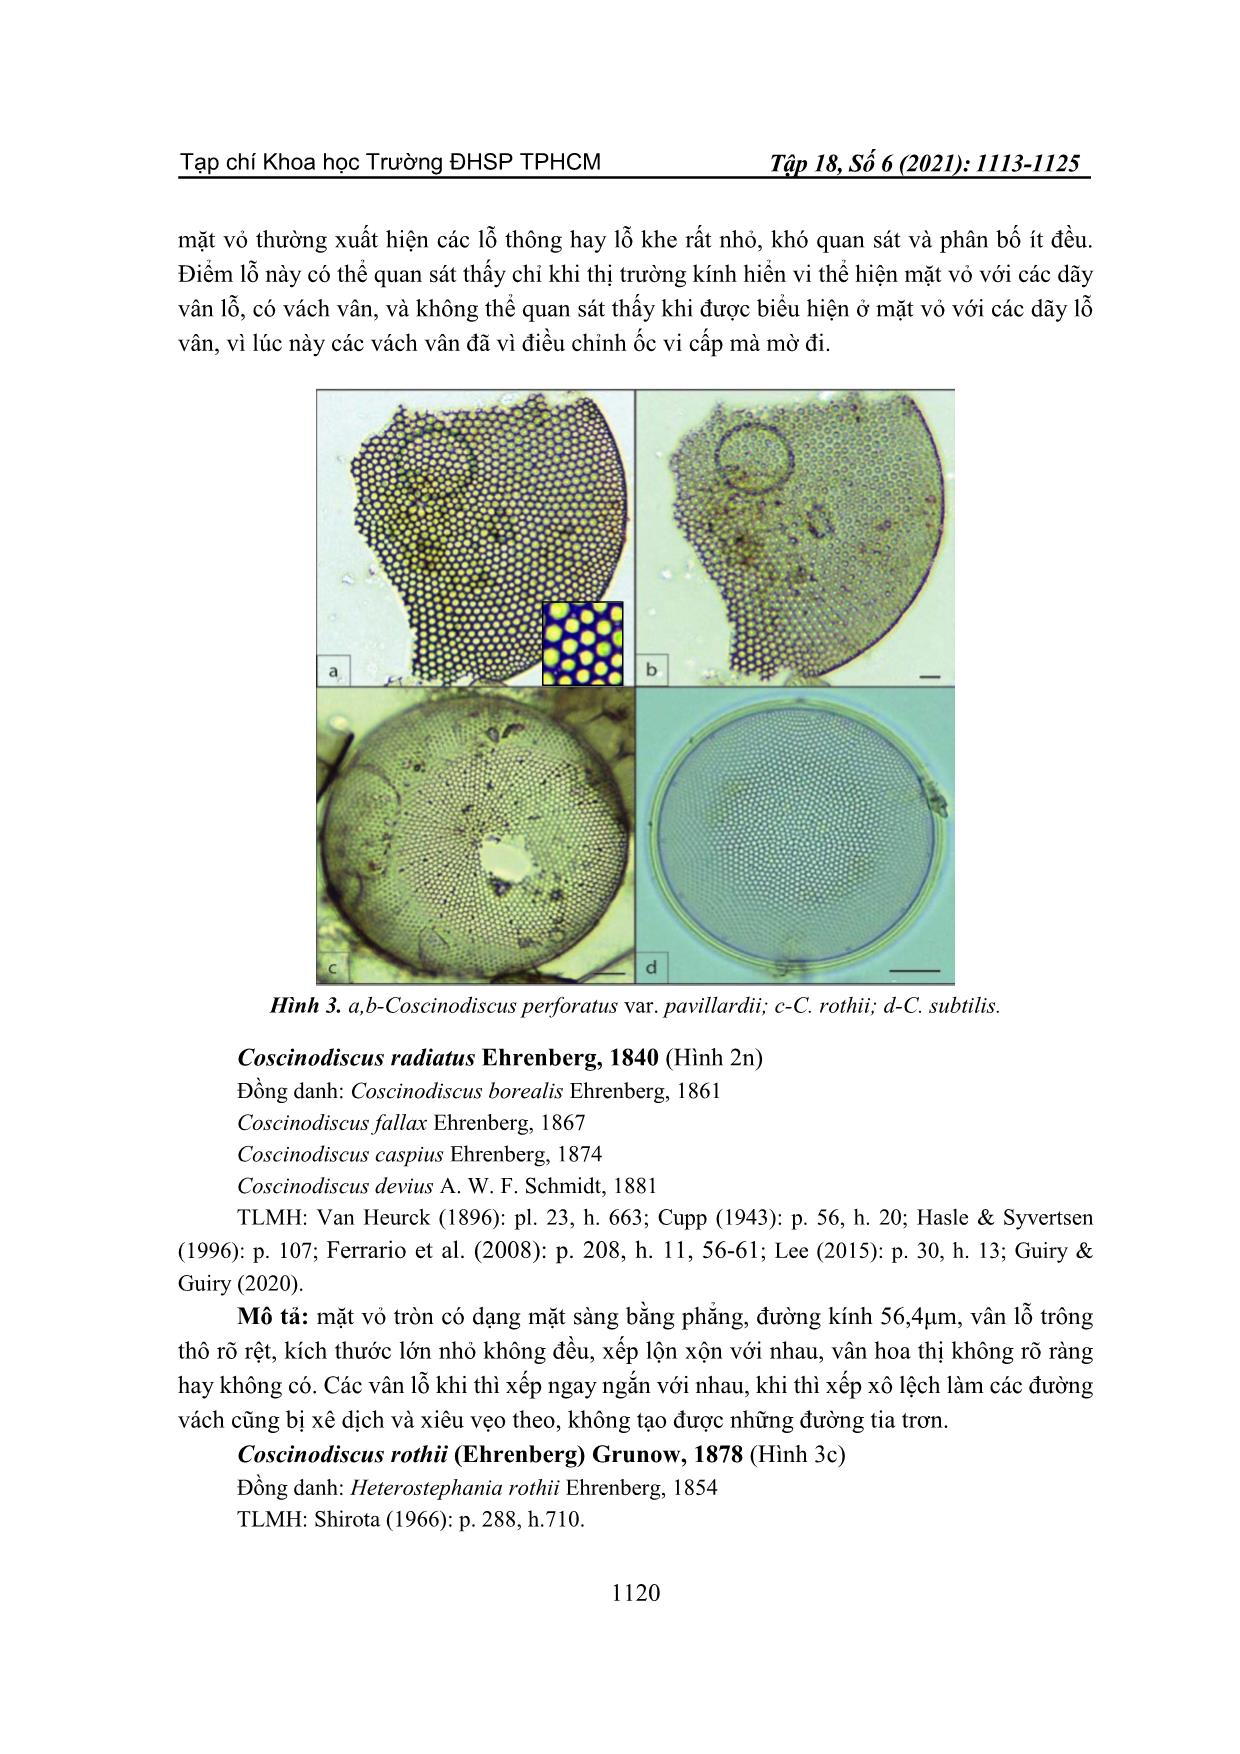 Nhận diện khuê tảo trung tâm coscinodiscus tại ven biển cửa sông Đông Hải, huyện Duyên Hải, tỉnh Trà Vinh trang 8